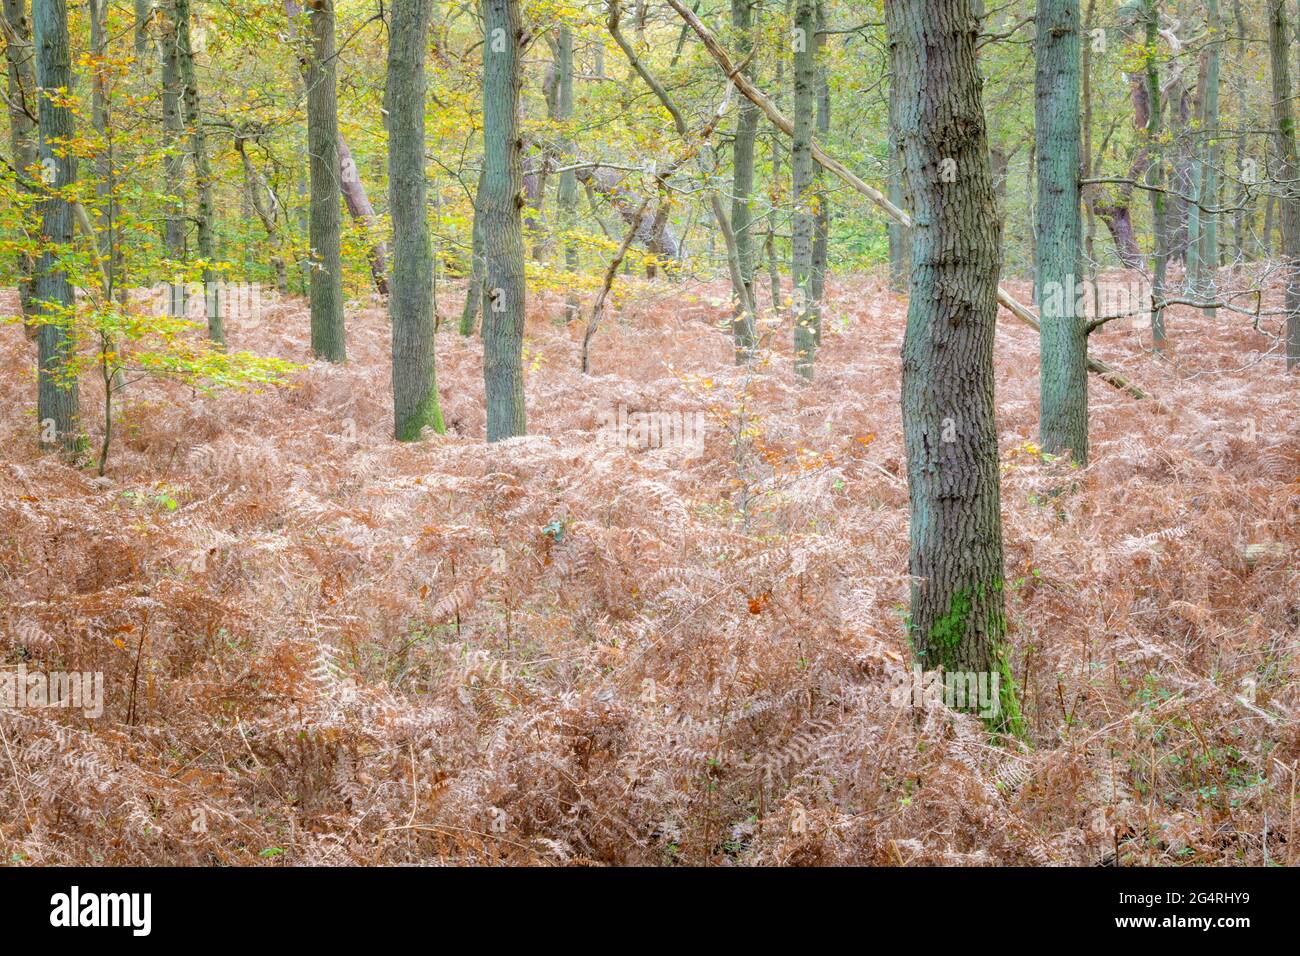 Forêt d'automne avec des feuilles et des fougères colorées, Amsterdam Waterleidingduinen, pays-Bas Banque D'Images